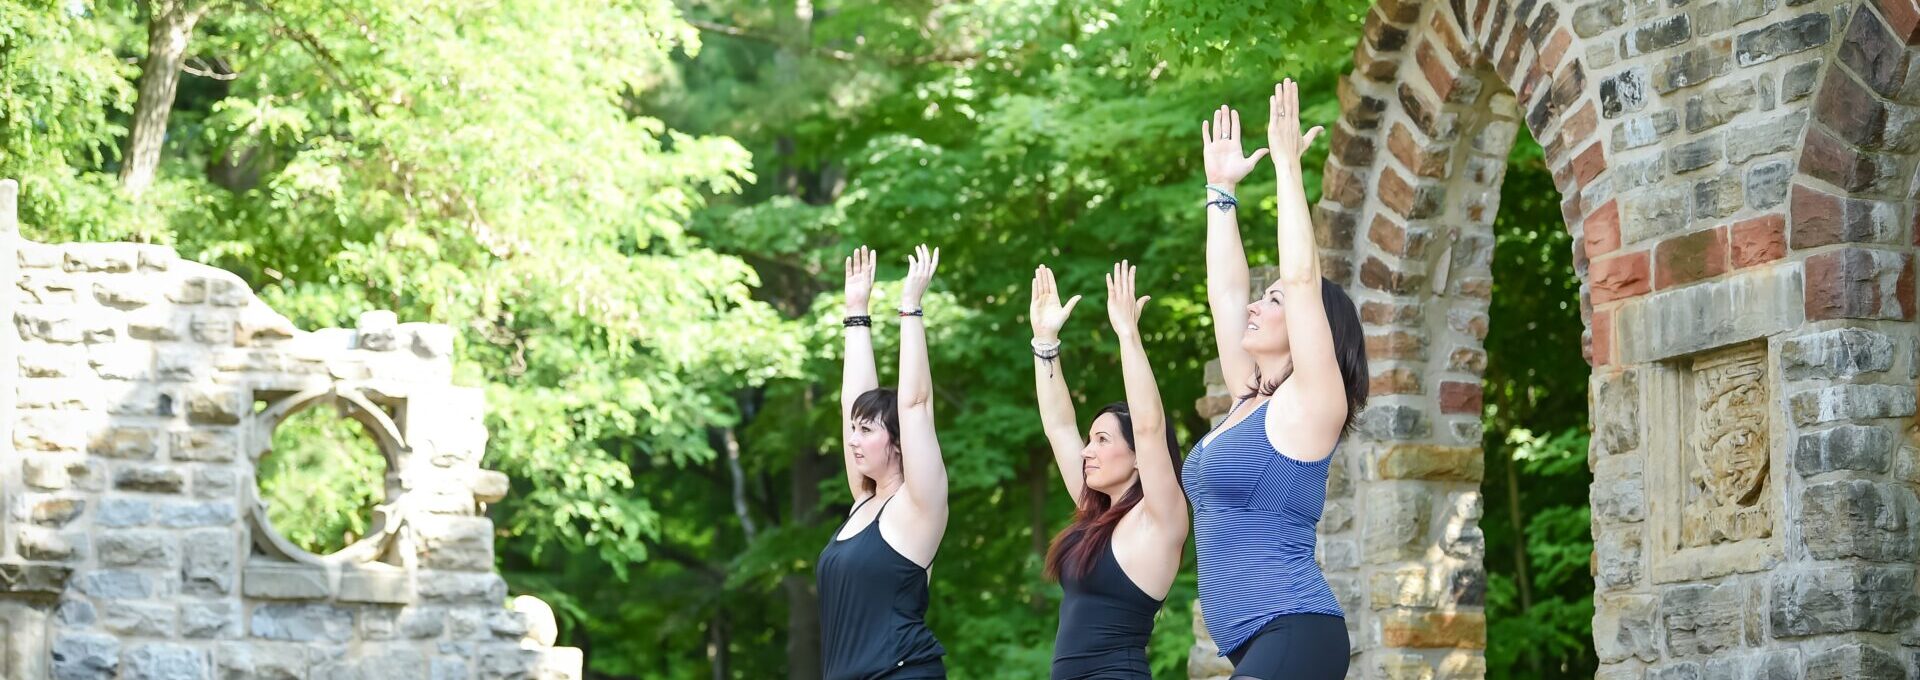 Women practising yoga outside